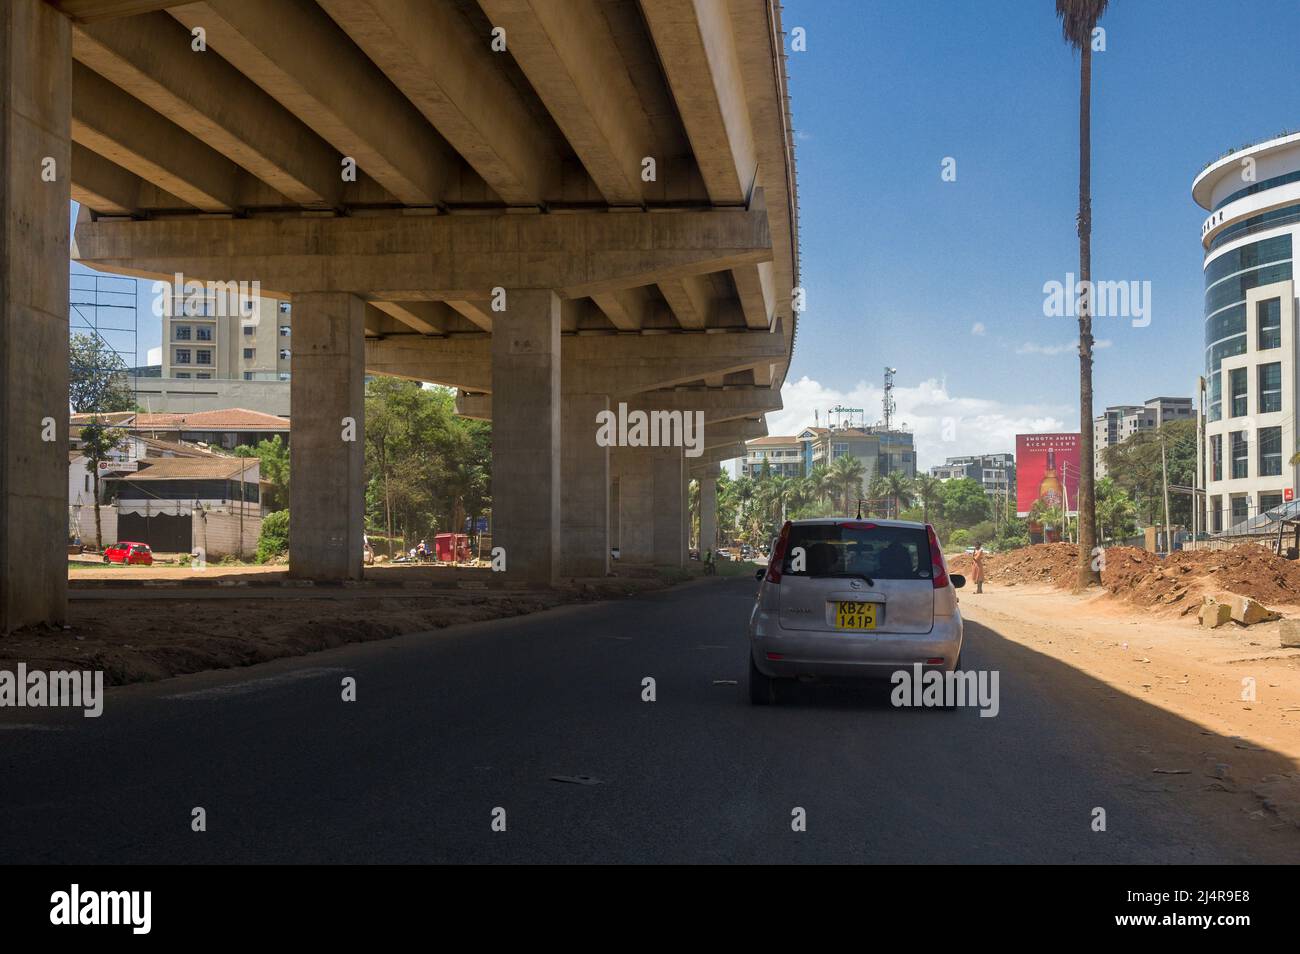 Parte dell'autostrada JKIA-Westlands in costruzione, una strada a pedaggio volta ad alleviare la congestione a Nairobi, Kenya Foto Stock